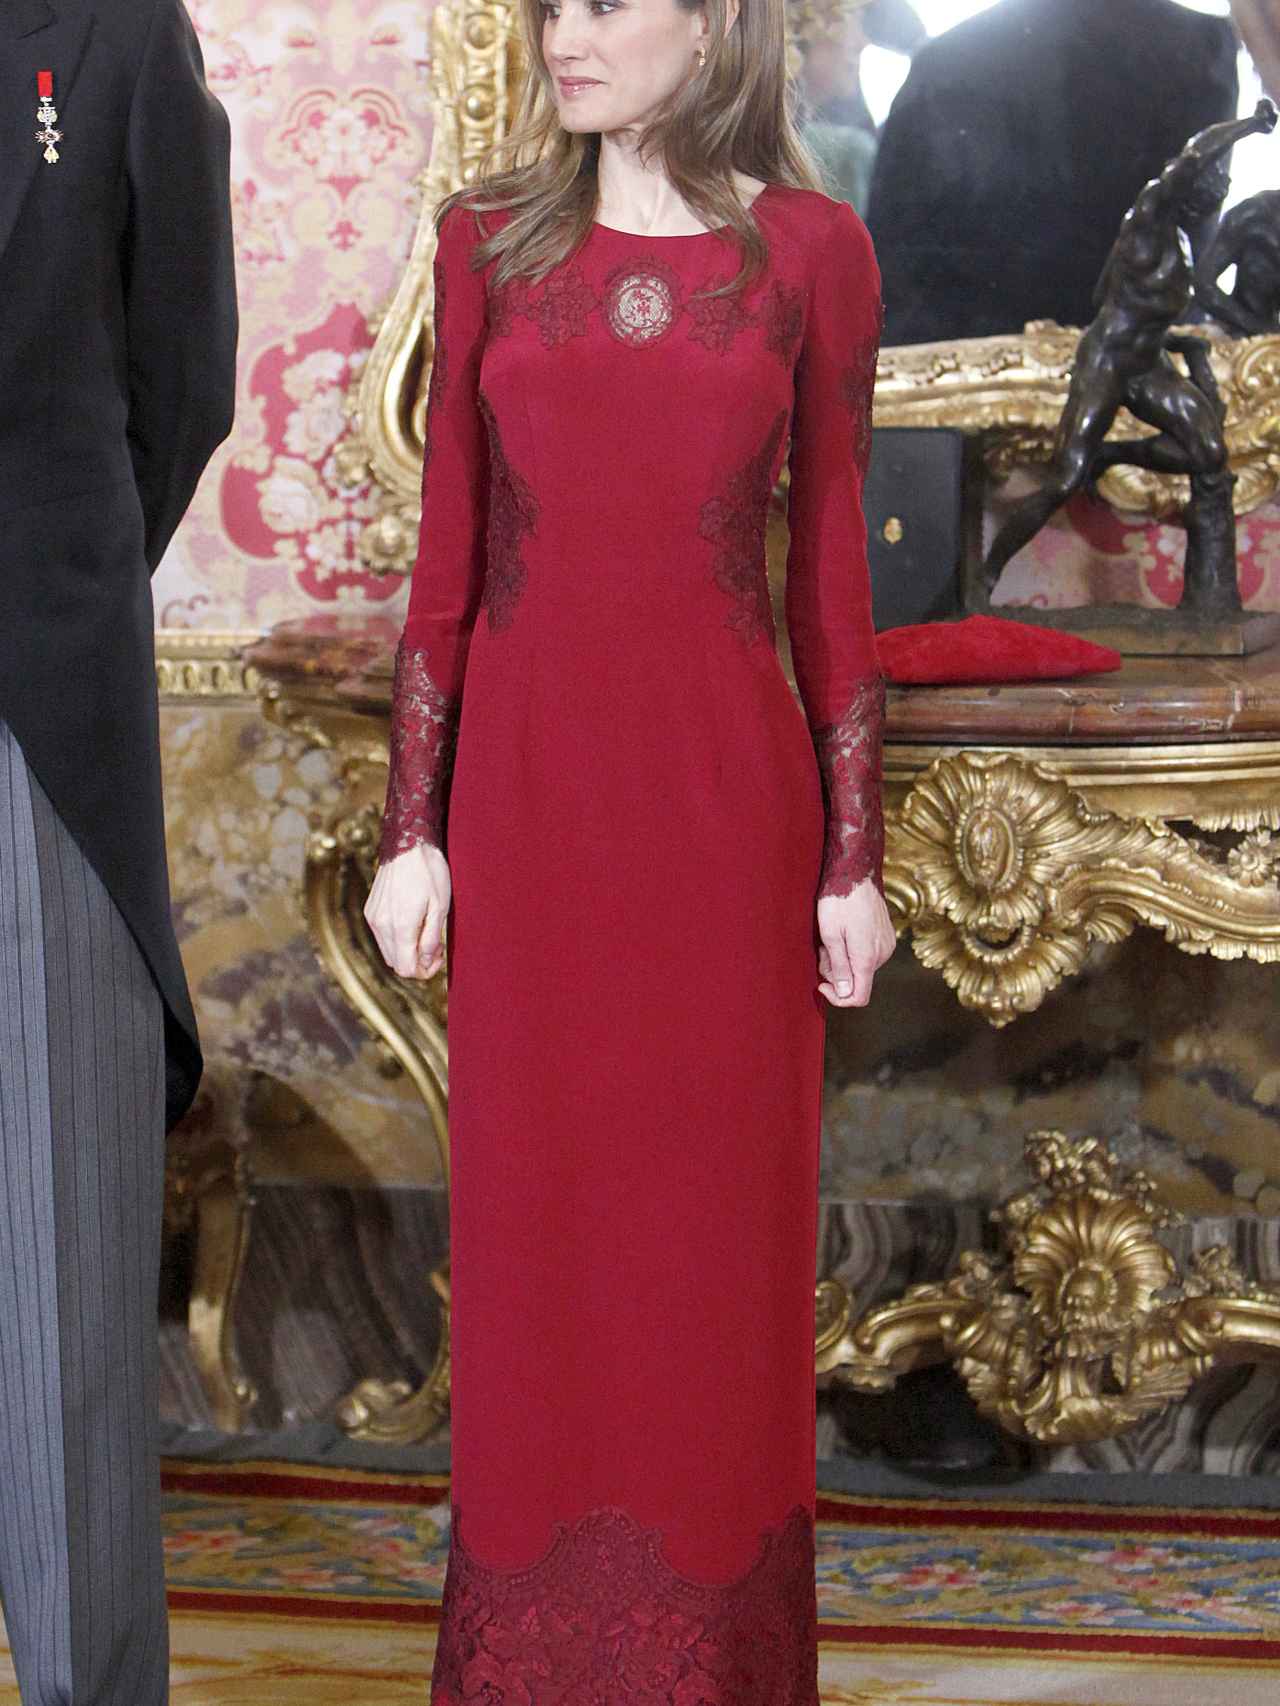 La reina Letizia, en la recepción de 2013 con el vestido firmado por Varela.